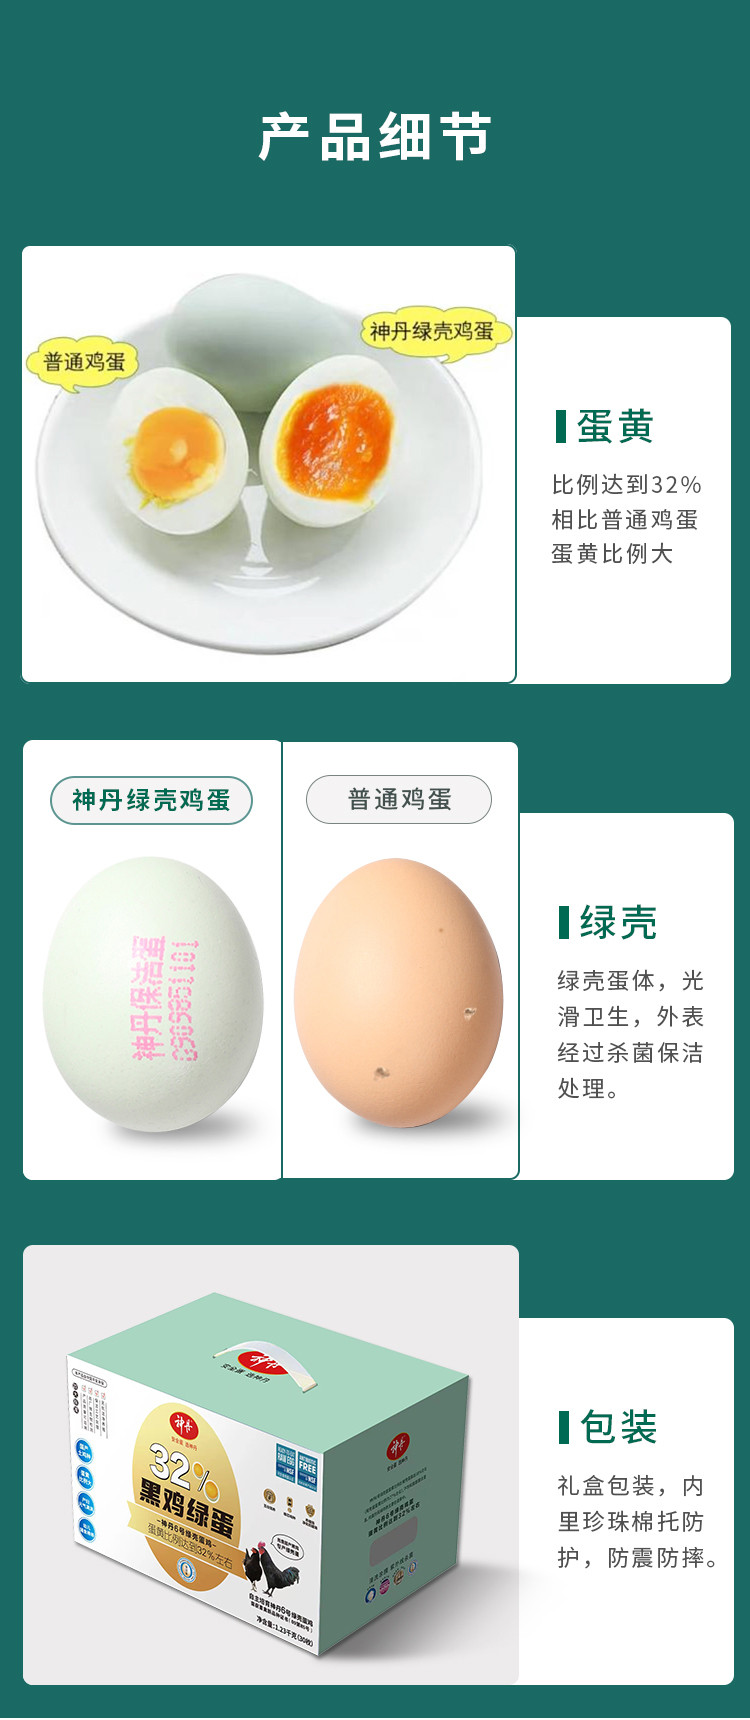 神丹  32%黑鸡绿蛋  可生食绿壳蛋